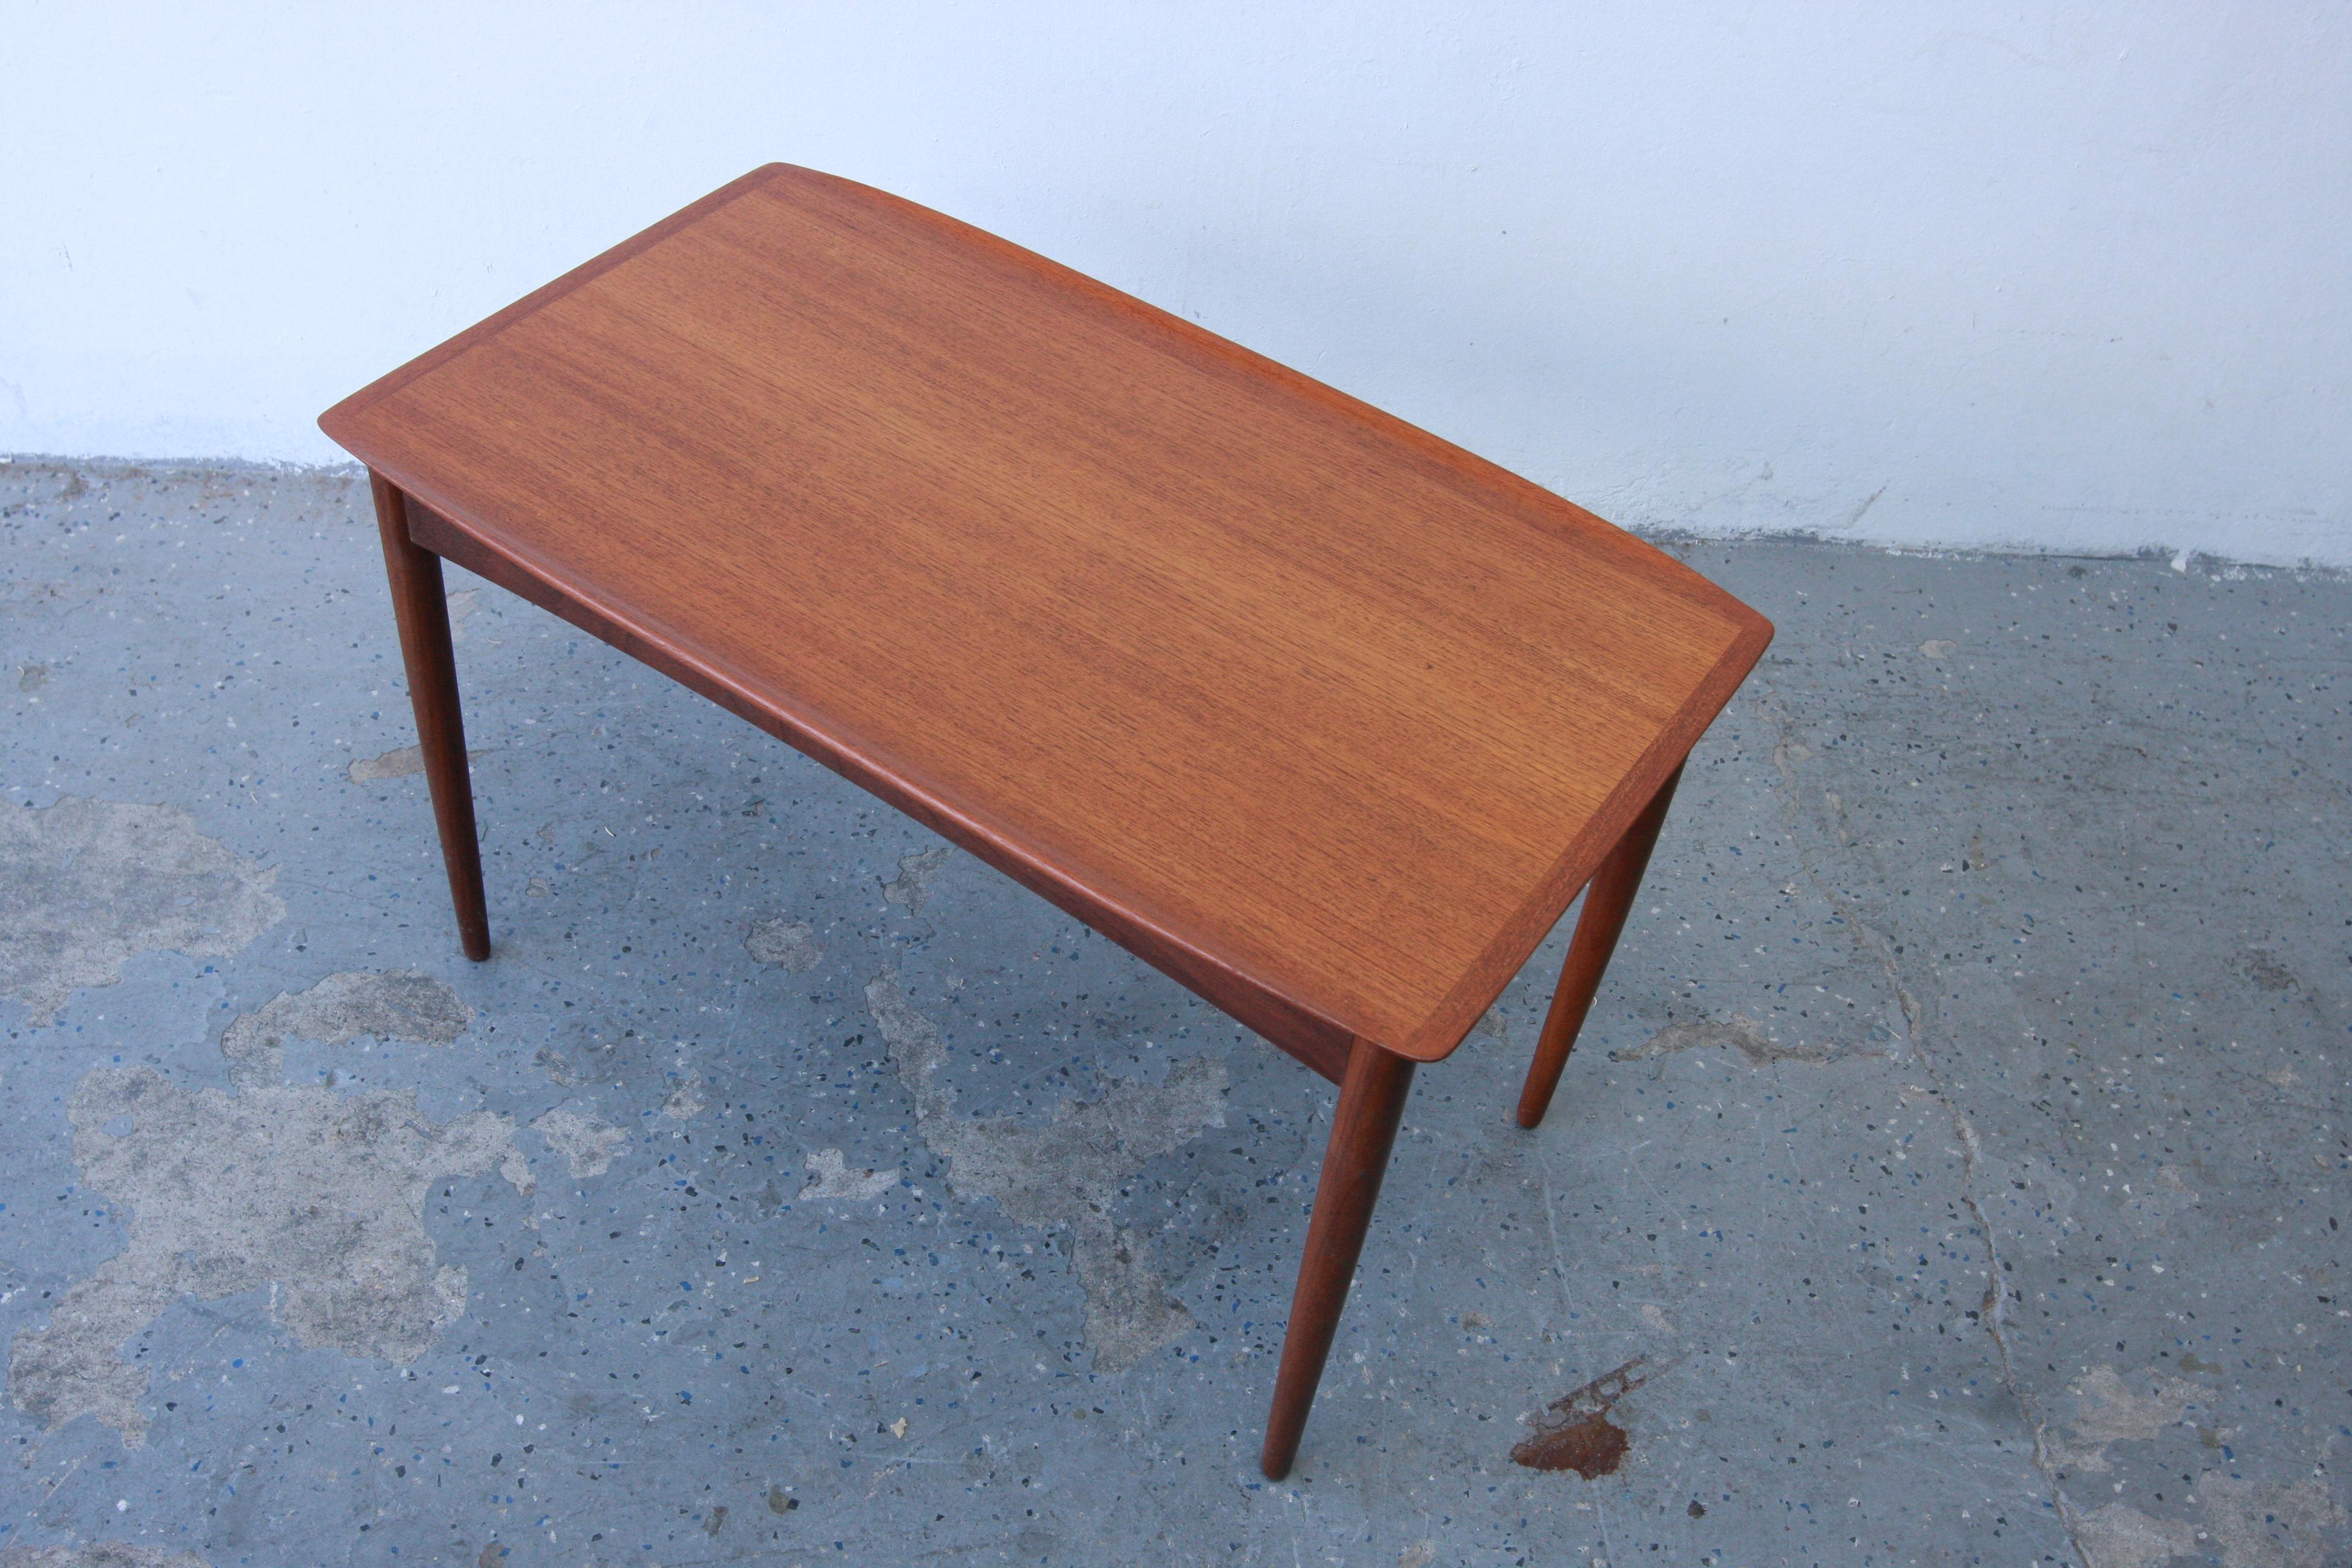 Spectaculaire table d'appoint en teck moderne danois des années 1960 par Mobelintarsia du Danemark. Ce meuble présente un plateau rectangulaire en teck magnifiquement grainé avec des rebords sculptés. Les rebords sculptés sont ouverts dans les